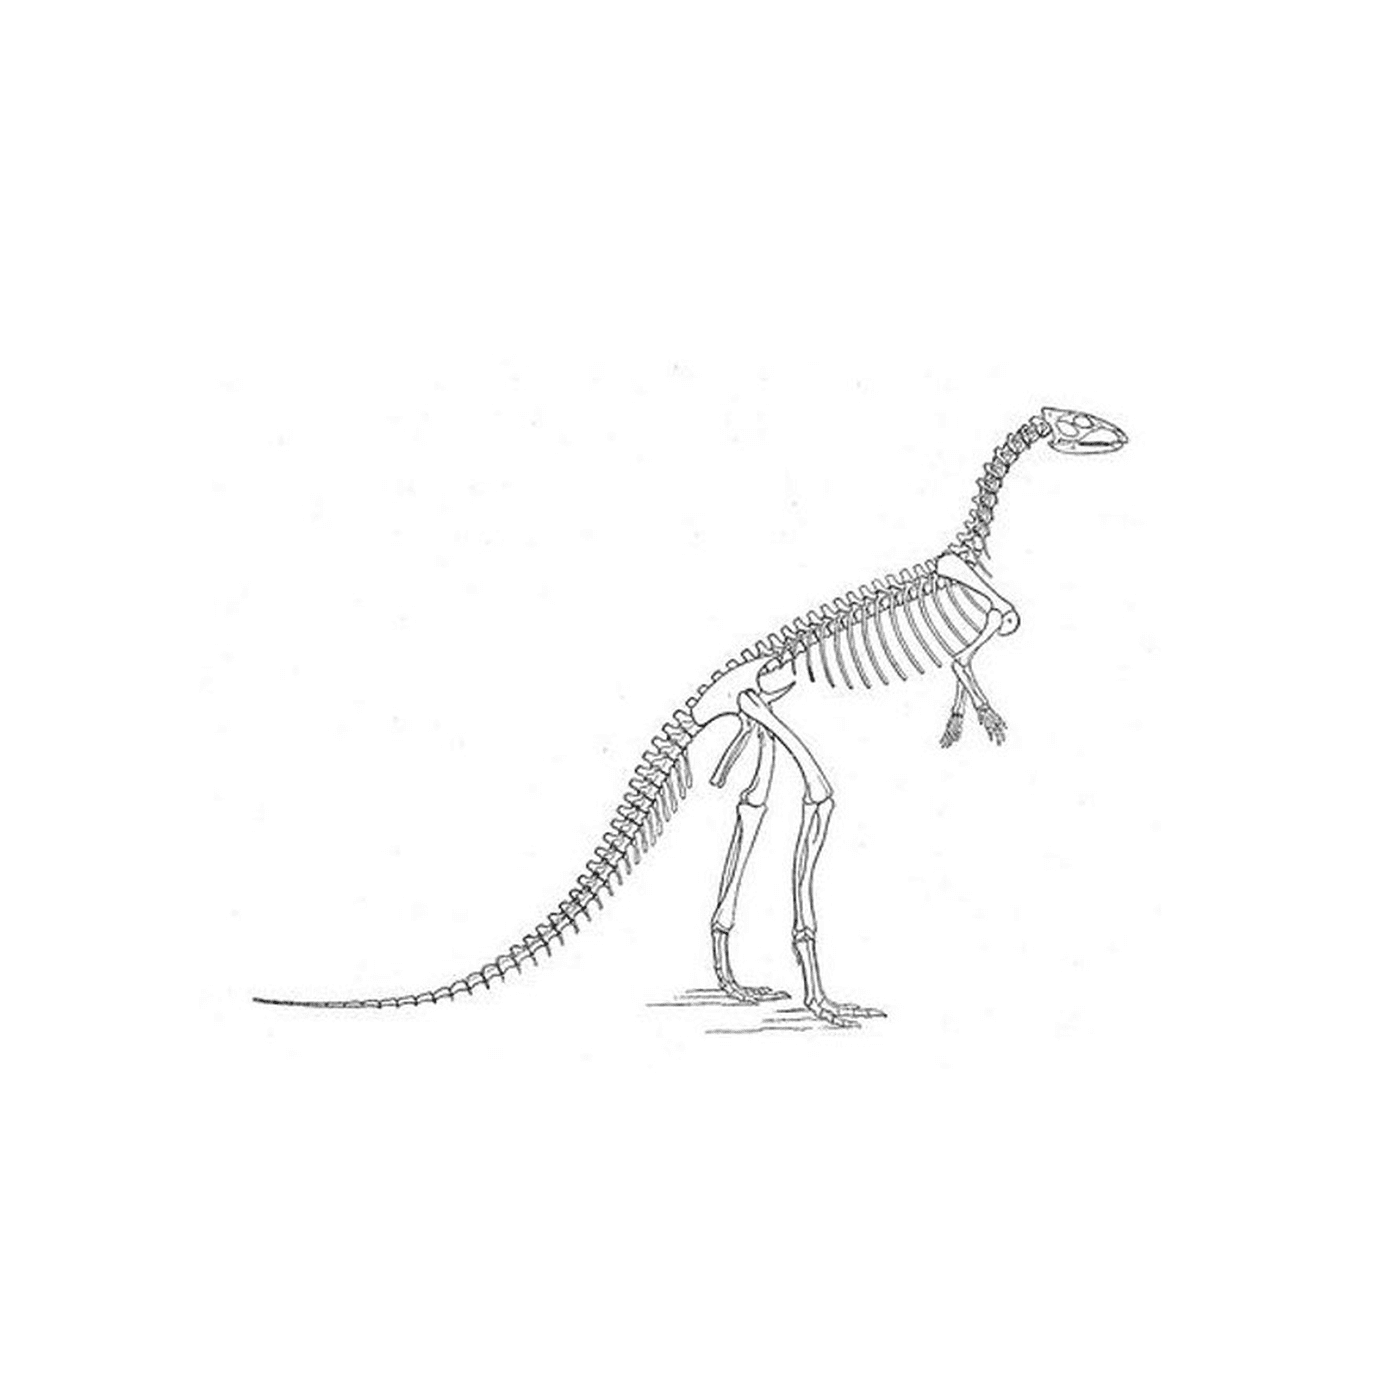  Um esqueleto de dinossauro 